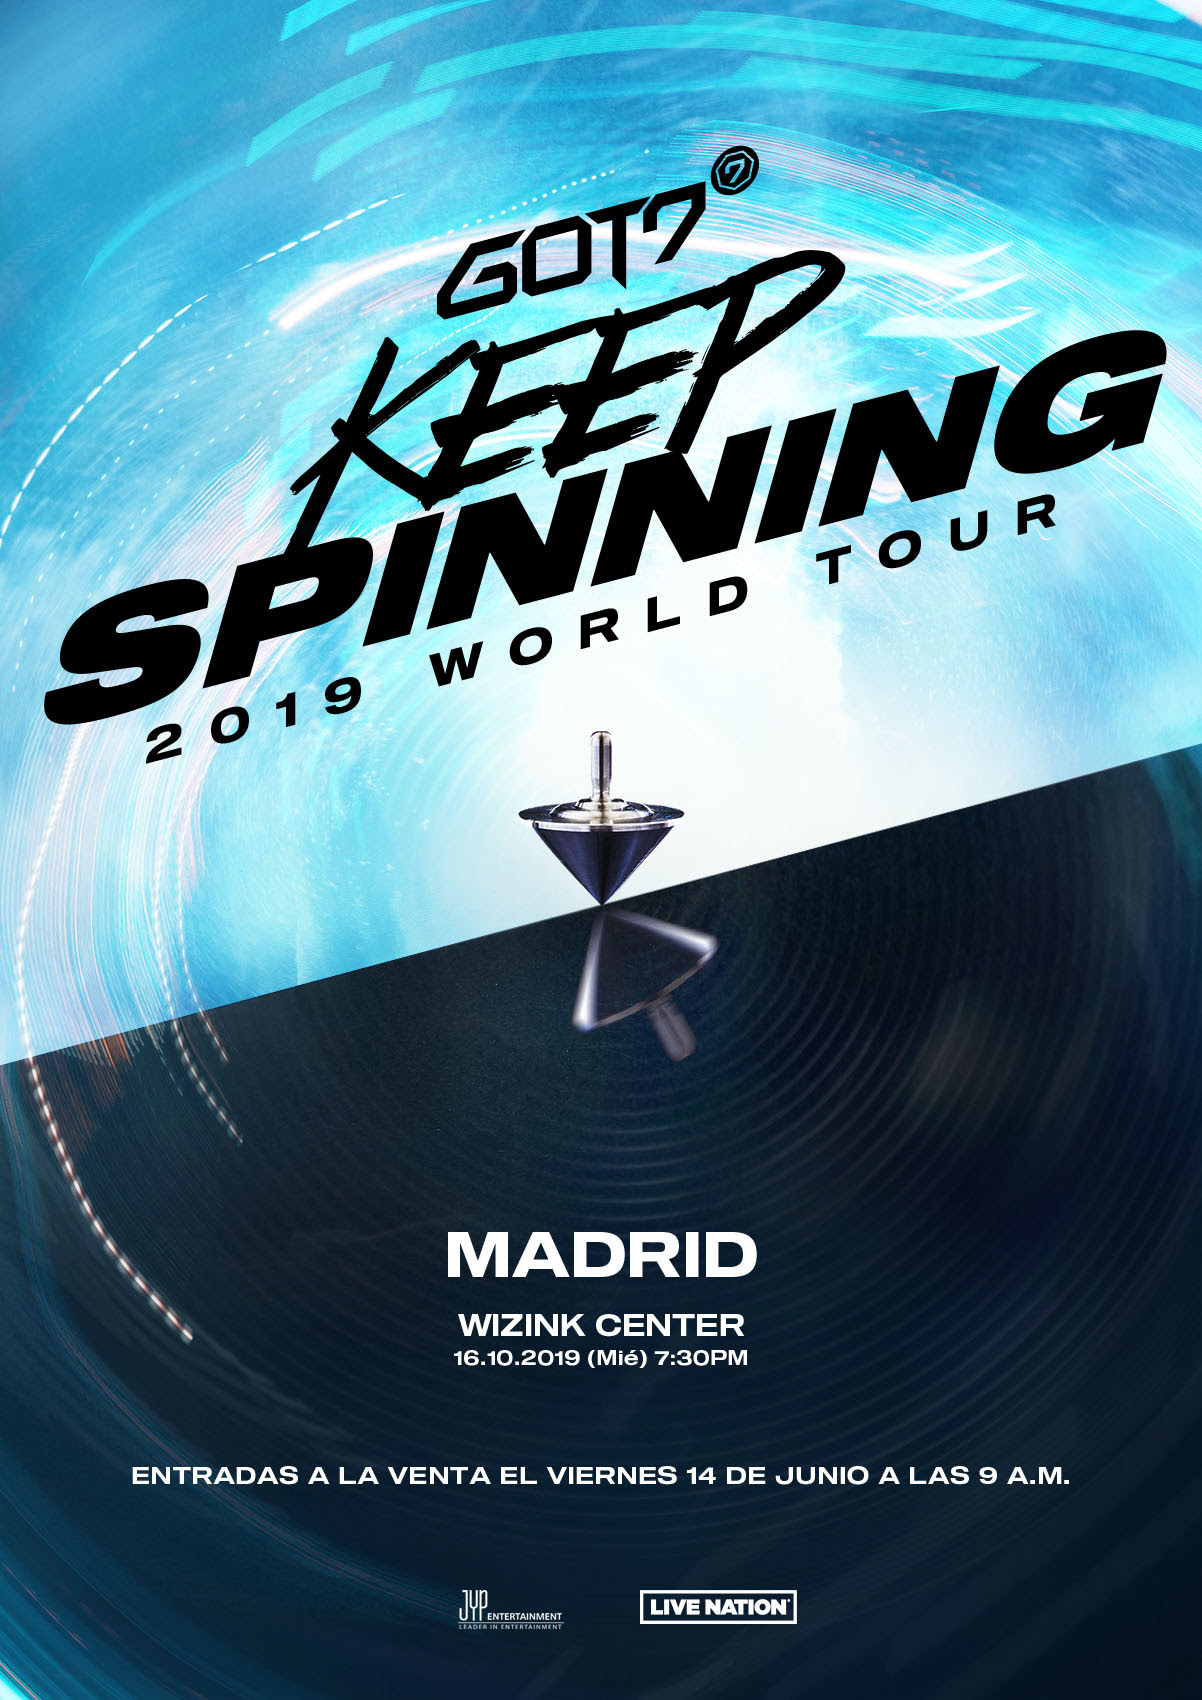 El Keep Spinning 2019 World Tour de GOT7 hará parada en nuestro país